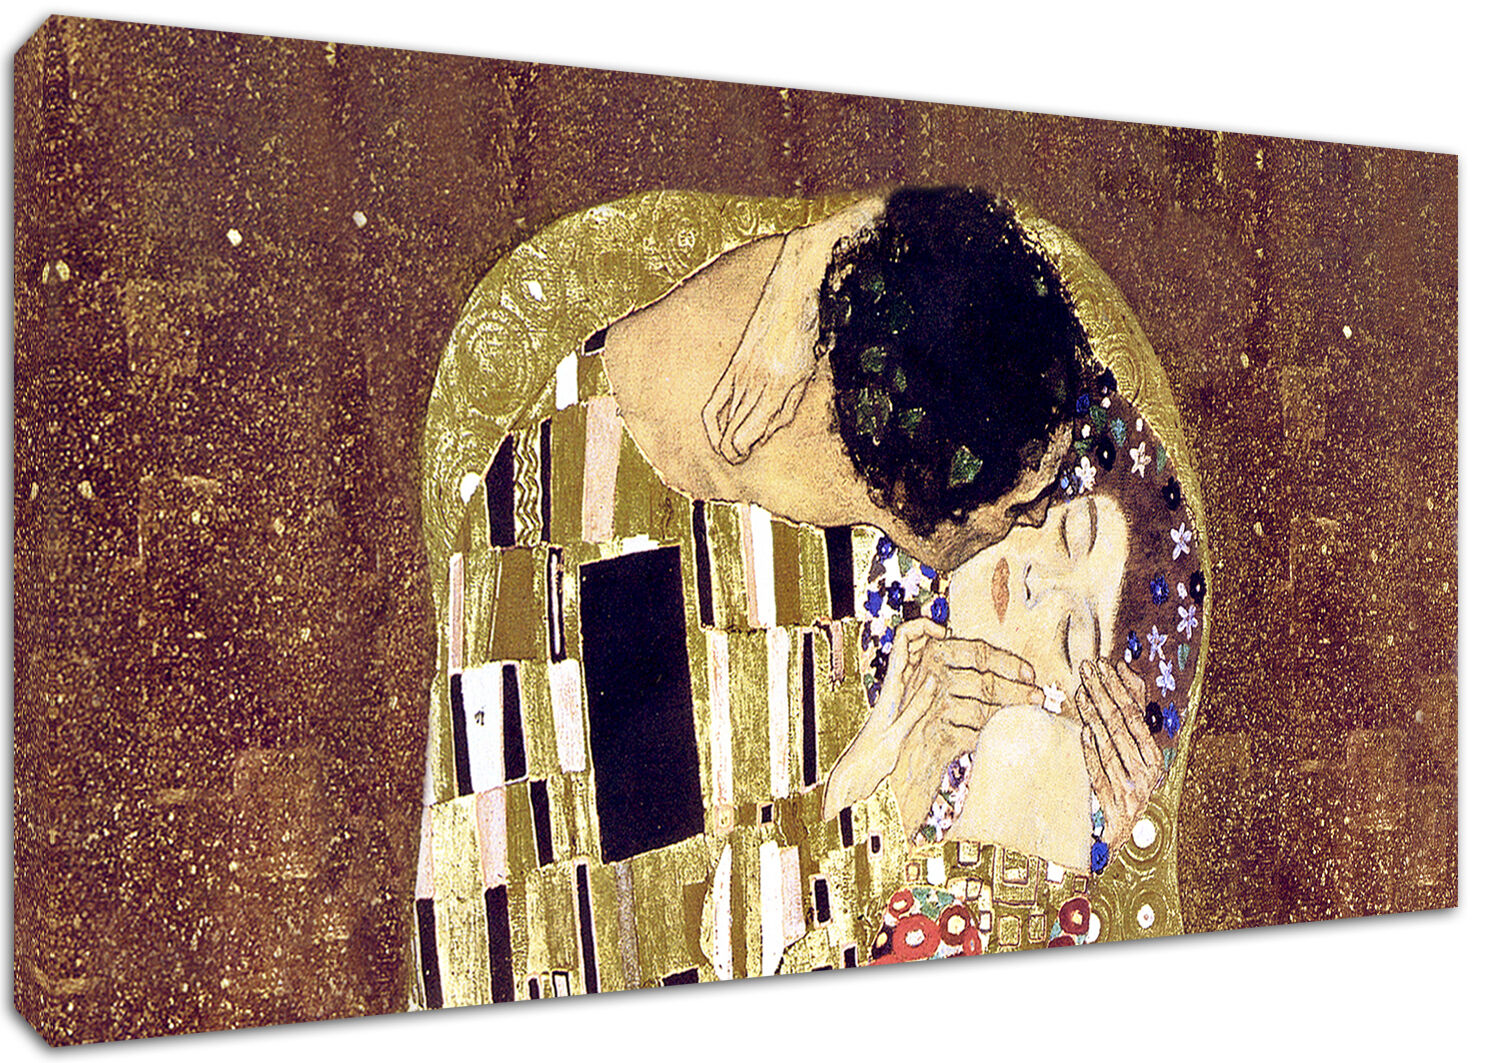 Quadro Moderno Arredamento Arredo Casa Arte Il Bacio di Klimt Stampa su Tela